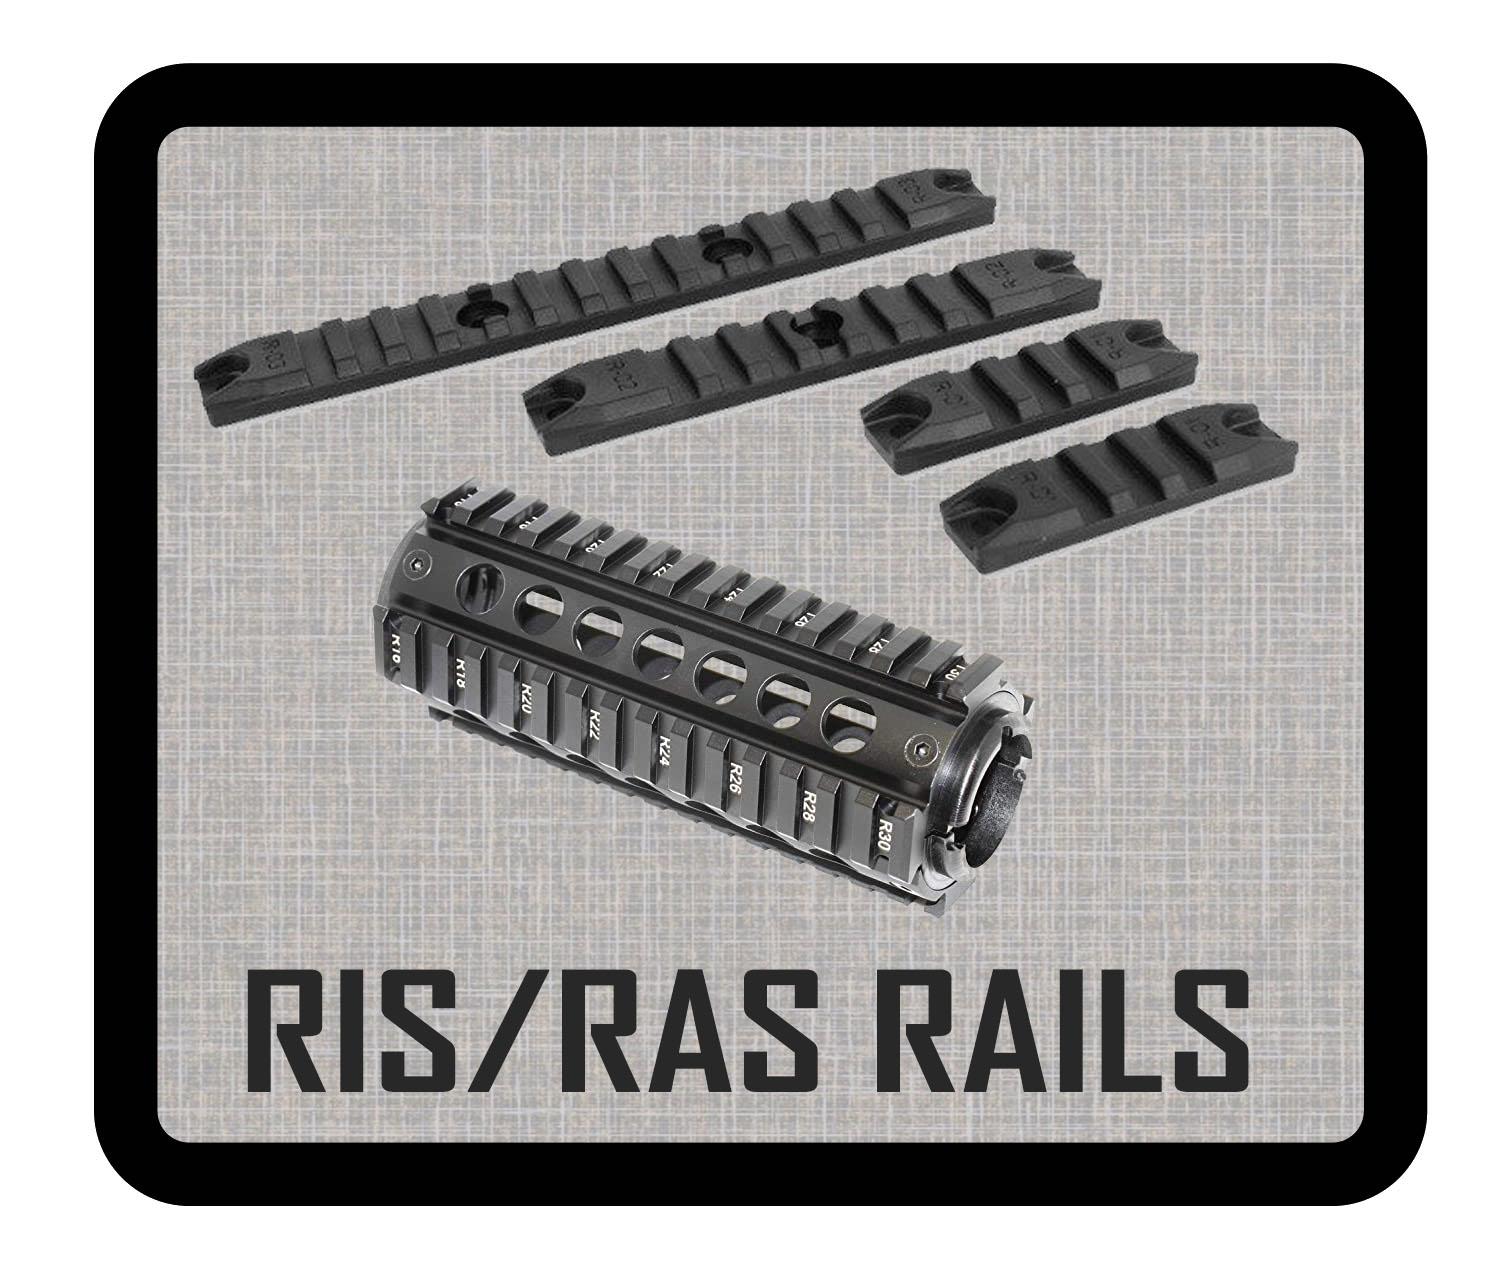 RIS / RAS RAILS